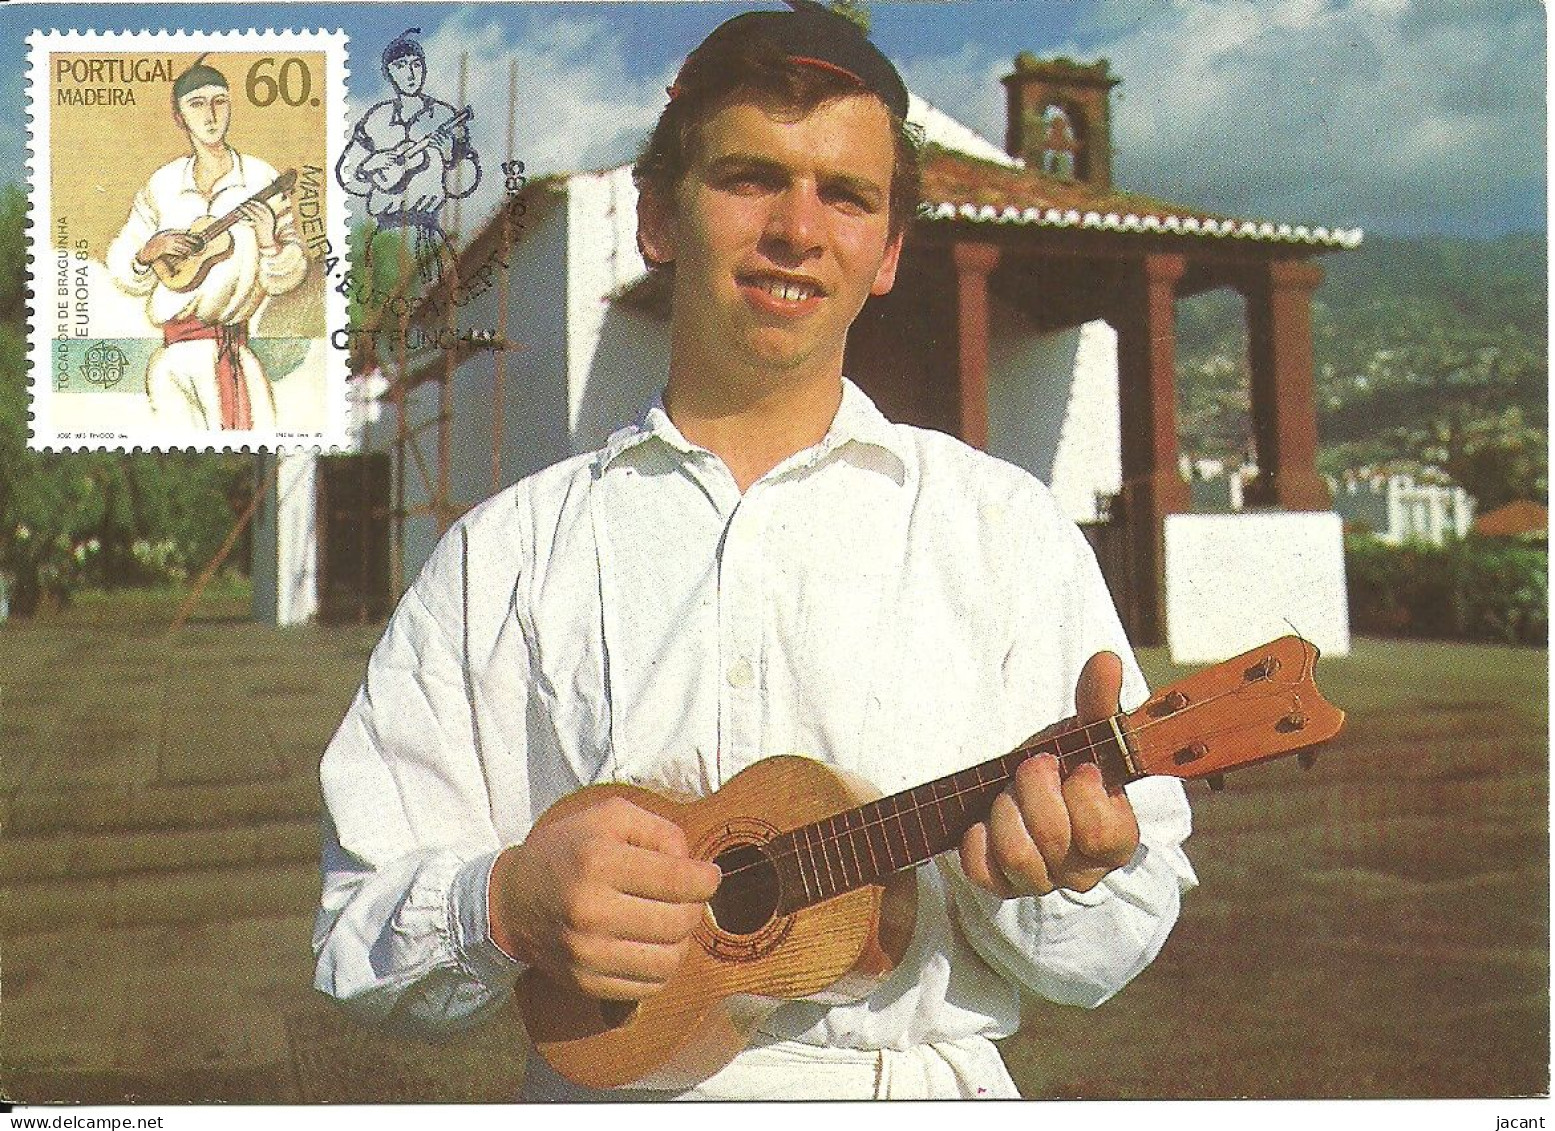 30842 - Carte Maximum - Portugal - Madeira Europa Tocadora De Braguinha - Instrument Musique Guitare Folk Musical Guitar - Maximumkarten (MC)